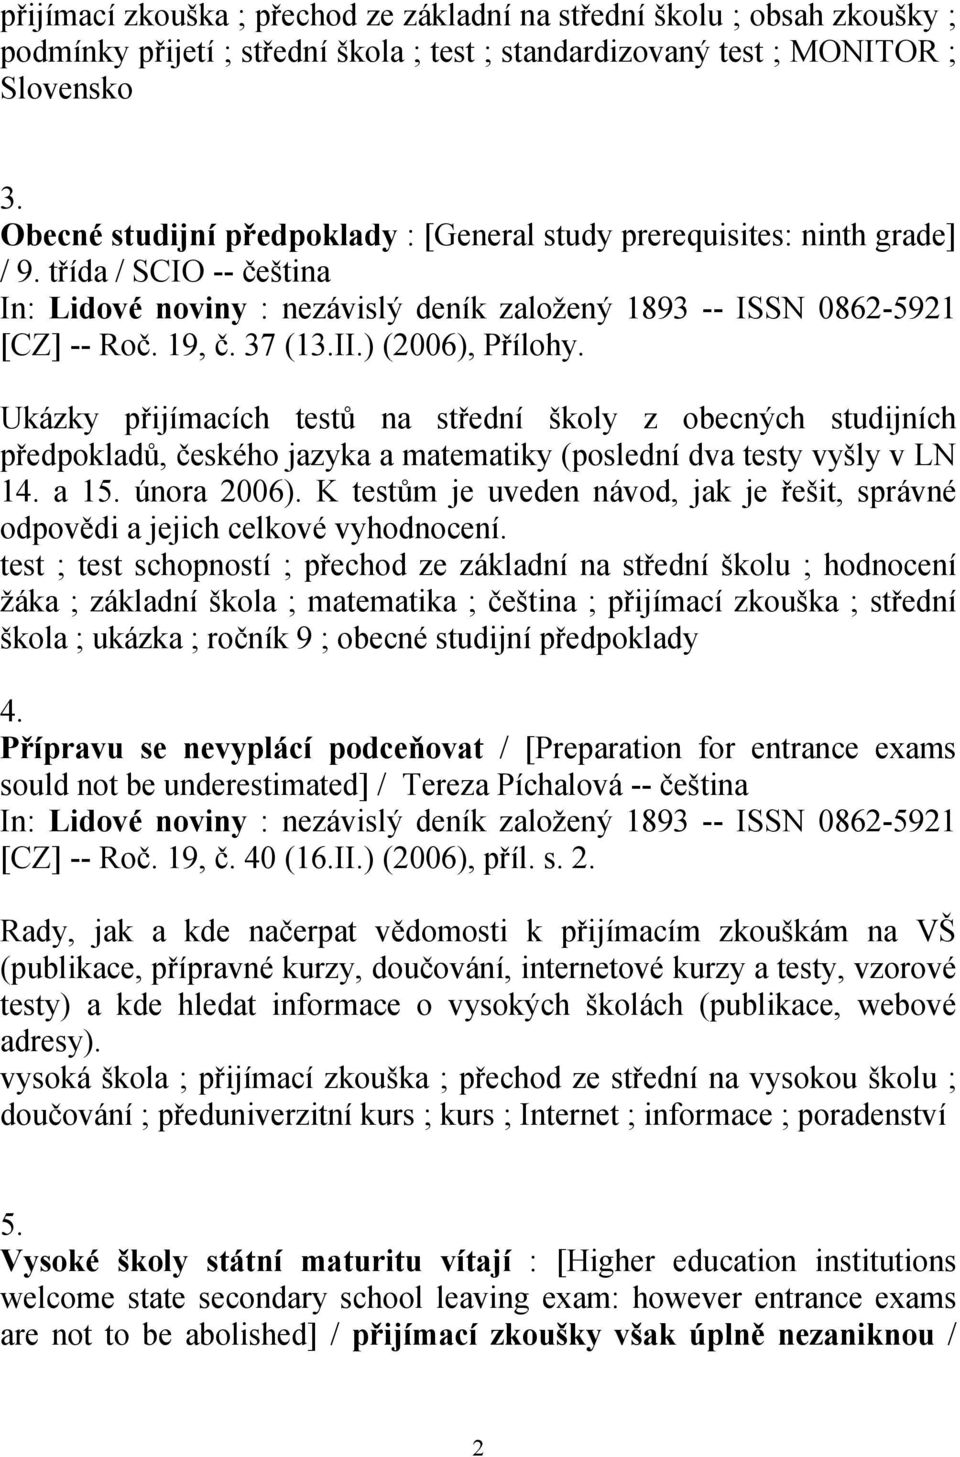 Ukázky přijímacích testů na střední školy z obecných studijních předpokladů, českého jazyka a matematiky (poslední dva testy vyšly v LN 14. a 15. února 2006).